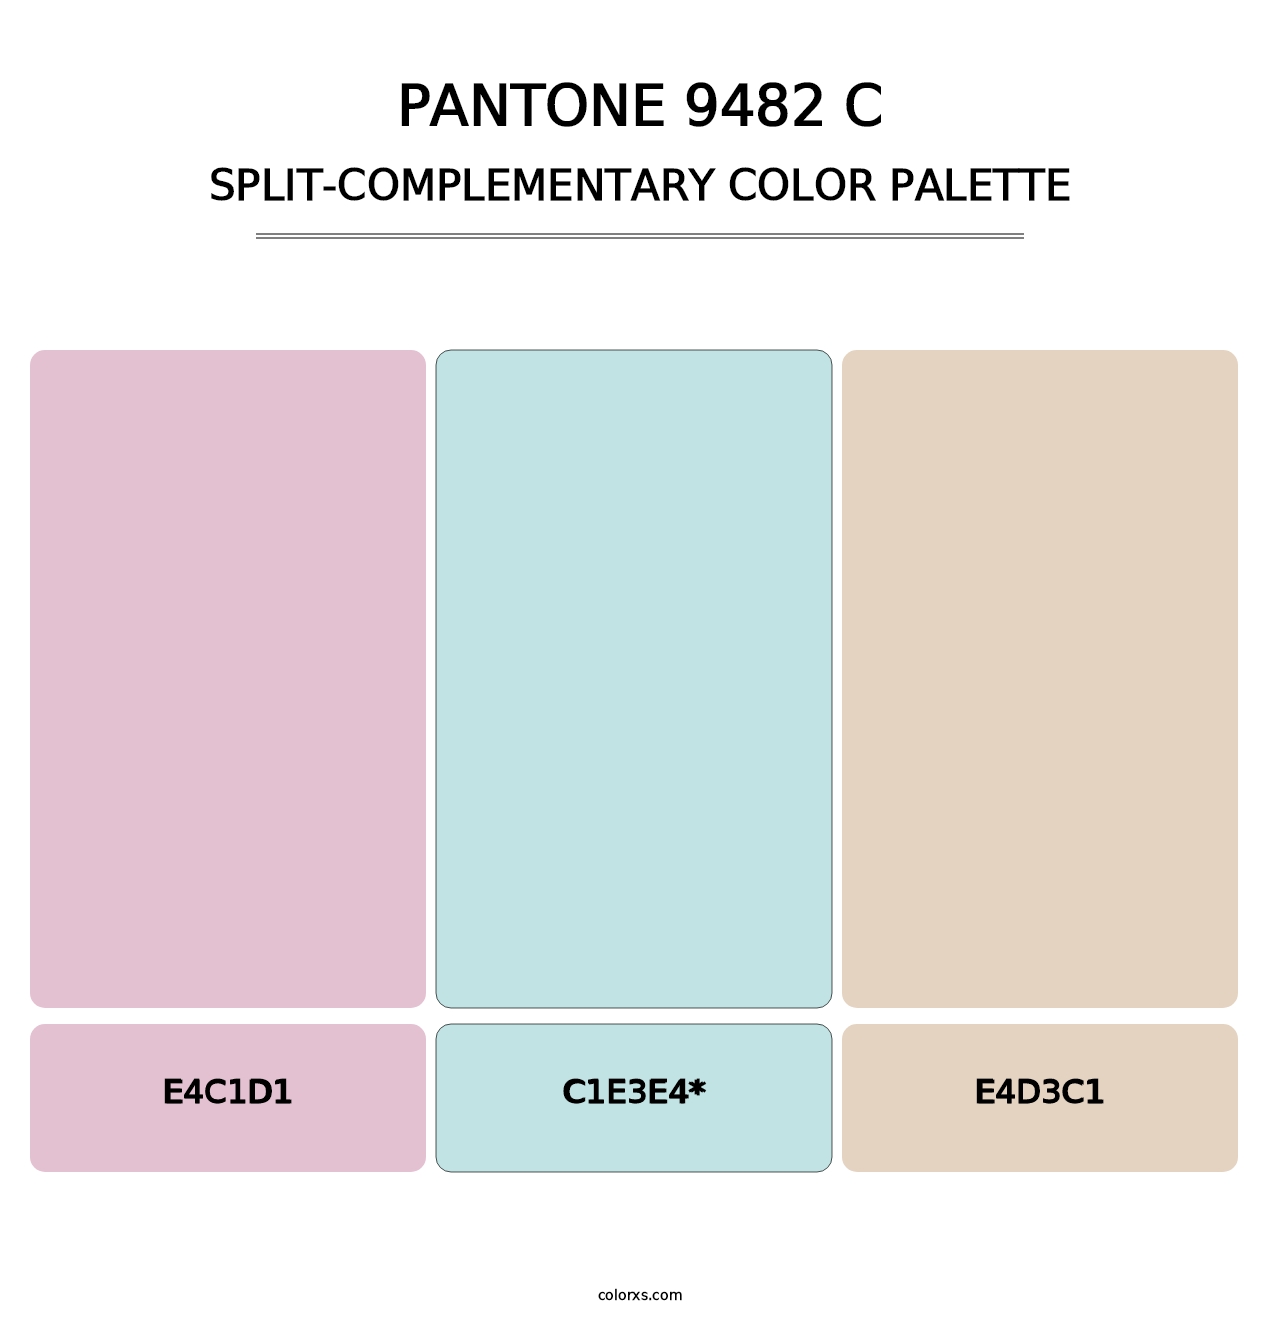 PANTONE 9482 C - Split-Complementary Color Palette